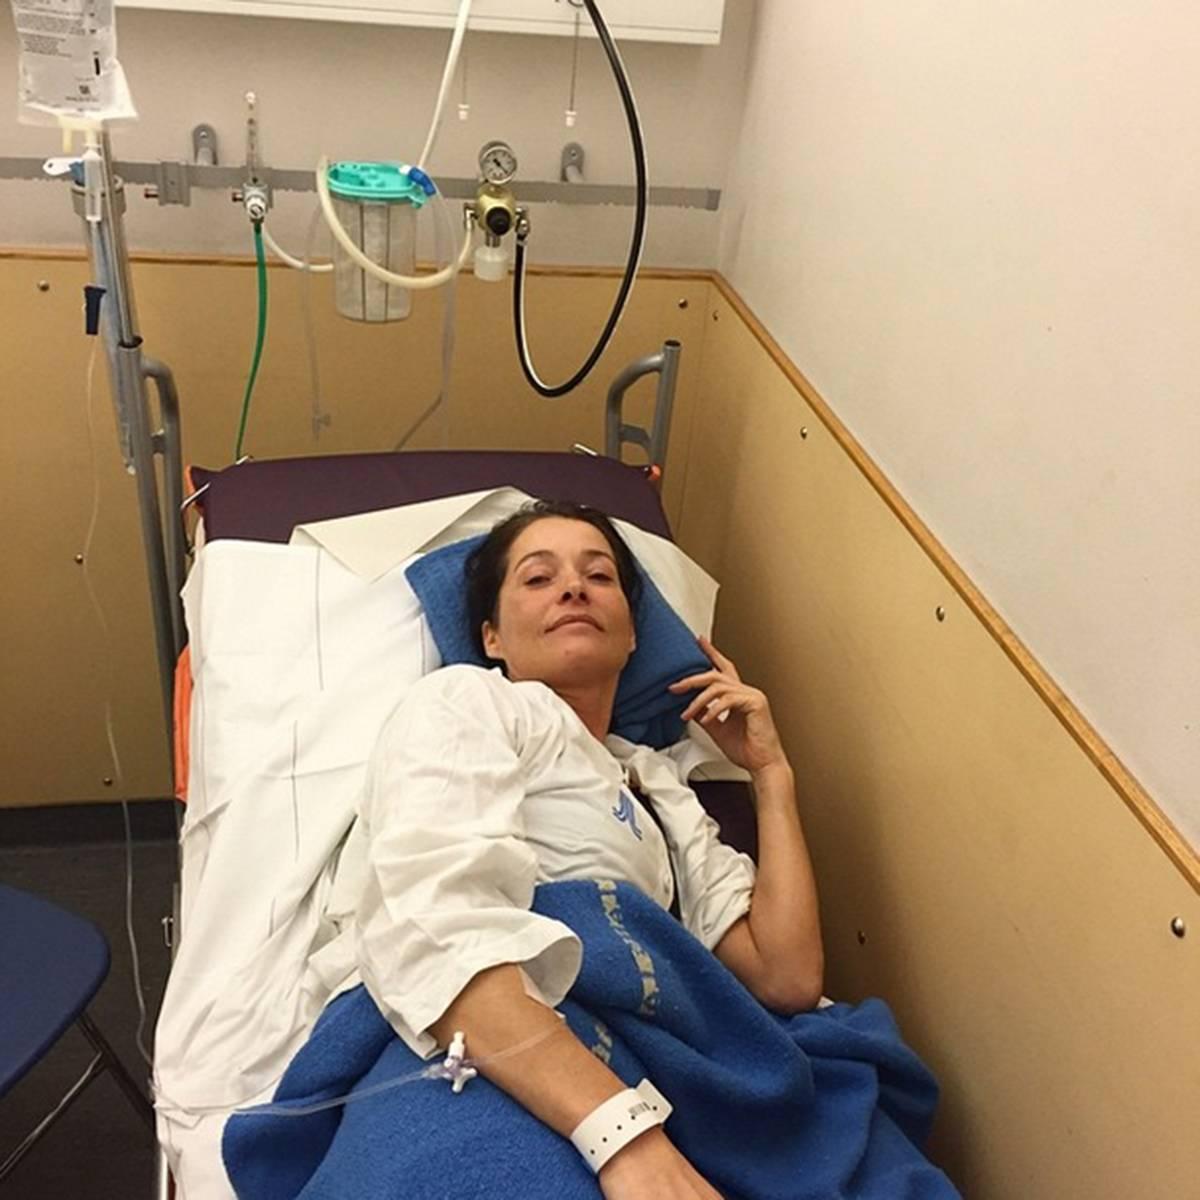 ”PERSONALEN ÄR FANTASTISK” Agneta Sjödin lade i går ut bilder på sitt Instagramkonto från Karolinska sjukhuset i Solna, där hon vårdas för sina skador. ”Jag är i väldigt ­goda händer. Jag är tacksam över att det finns så fina och duktiga människor inom vården”, säger hon.